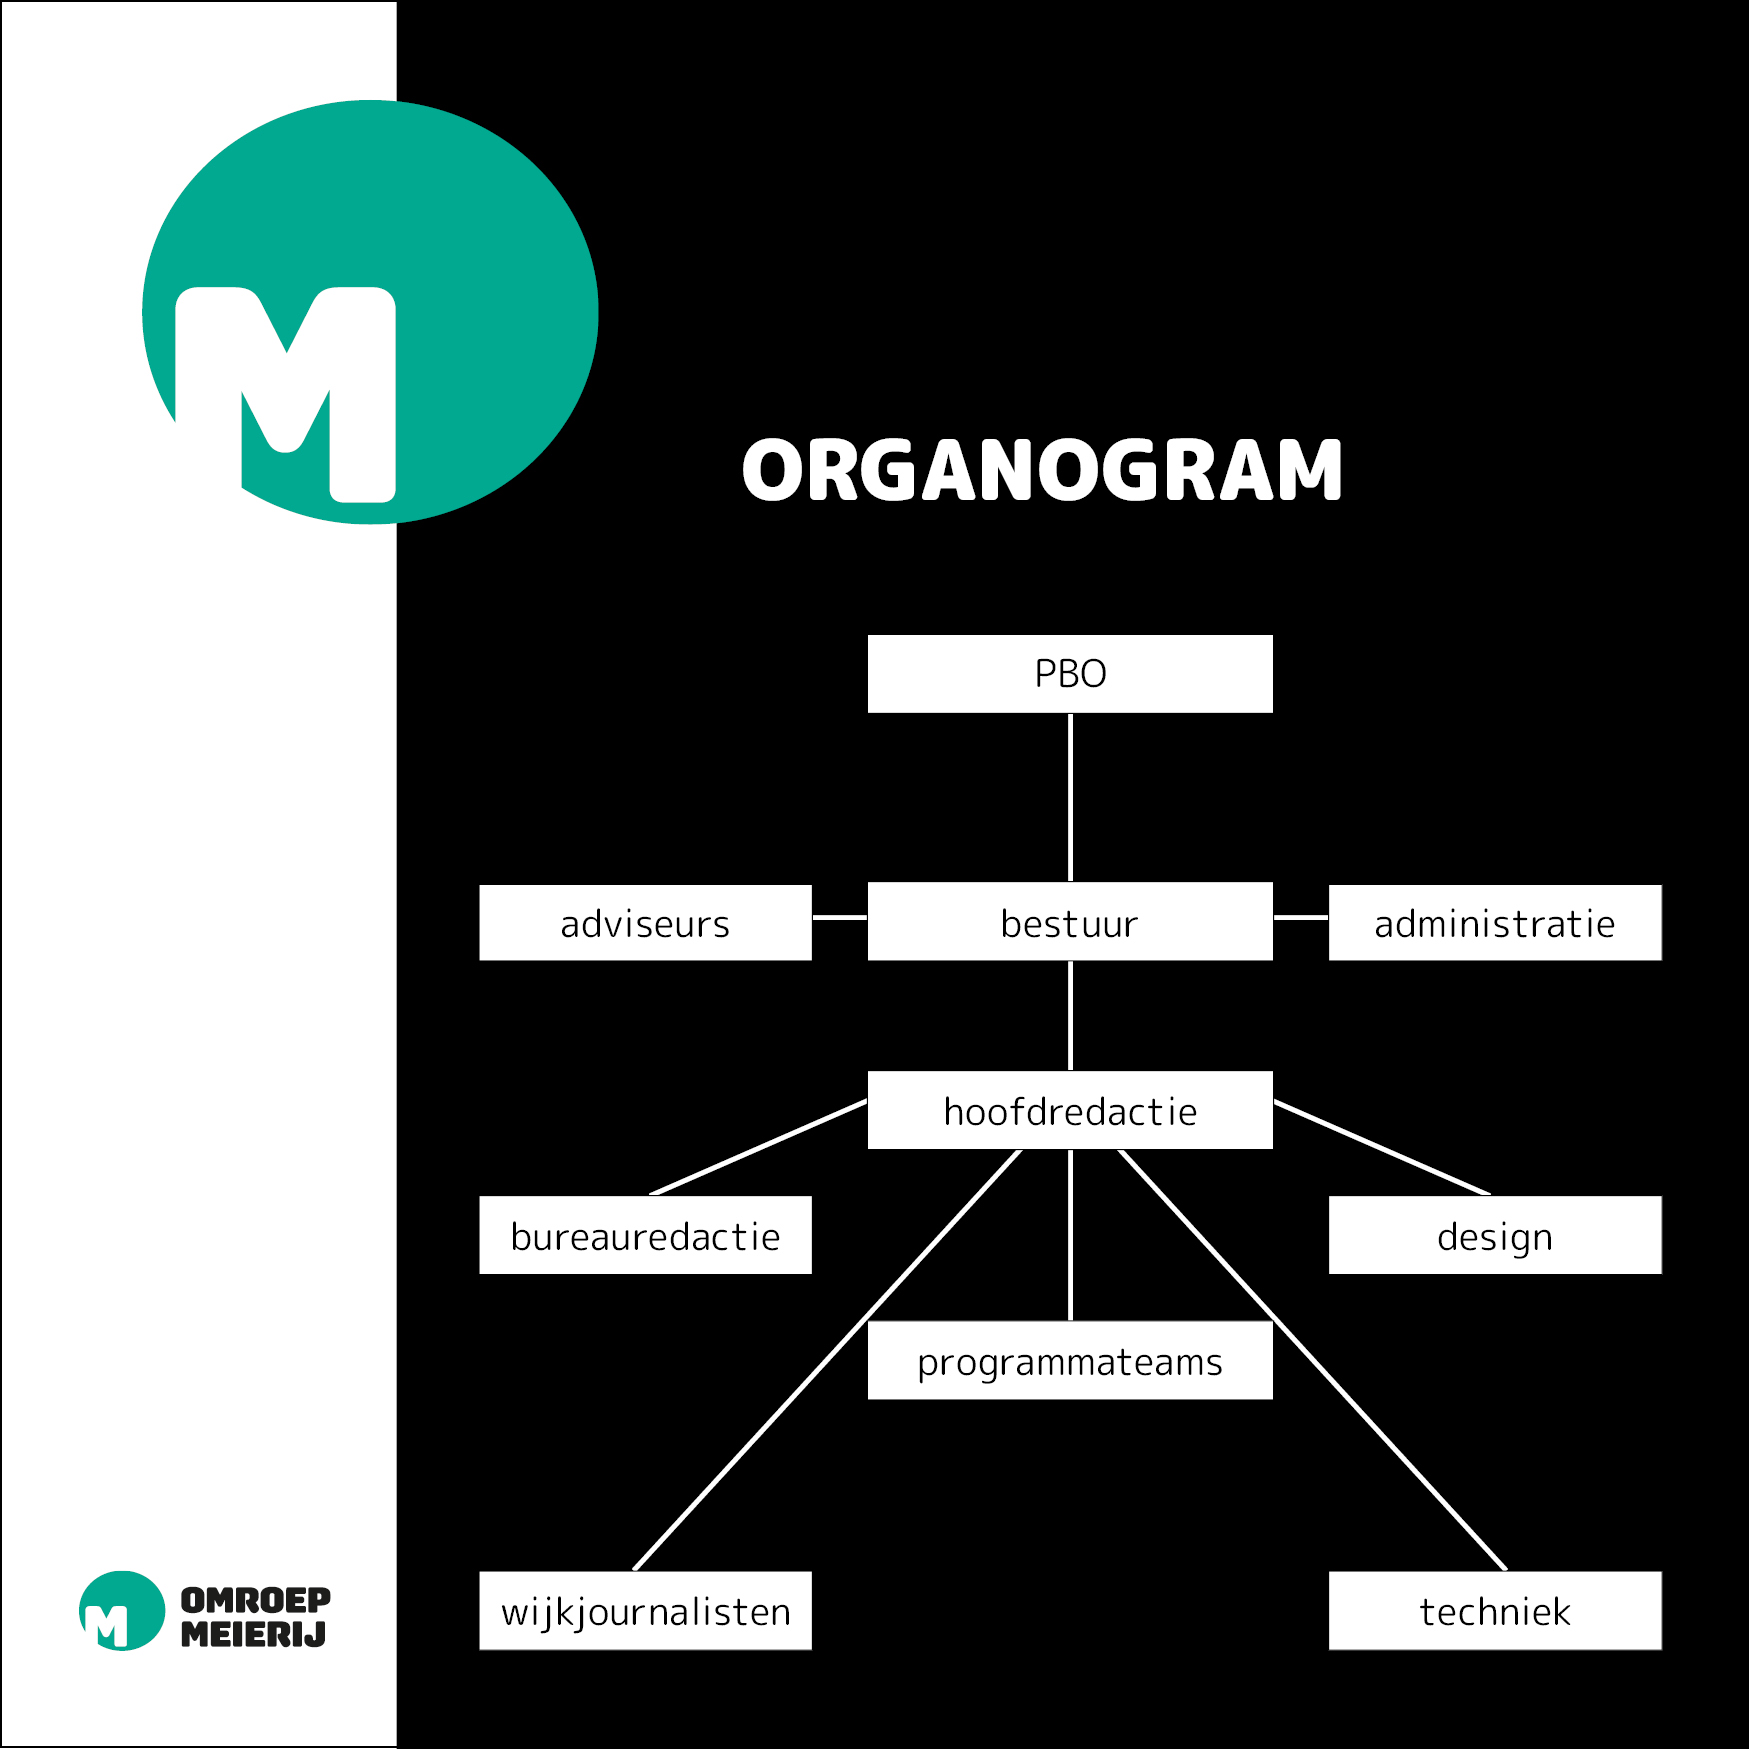 Organogram Omroep Meierij